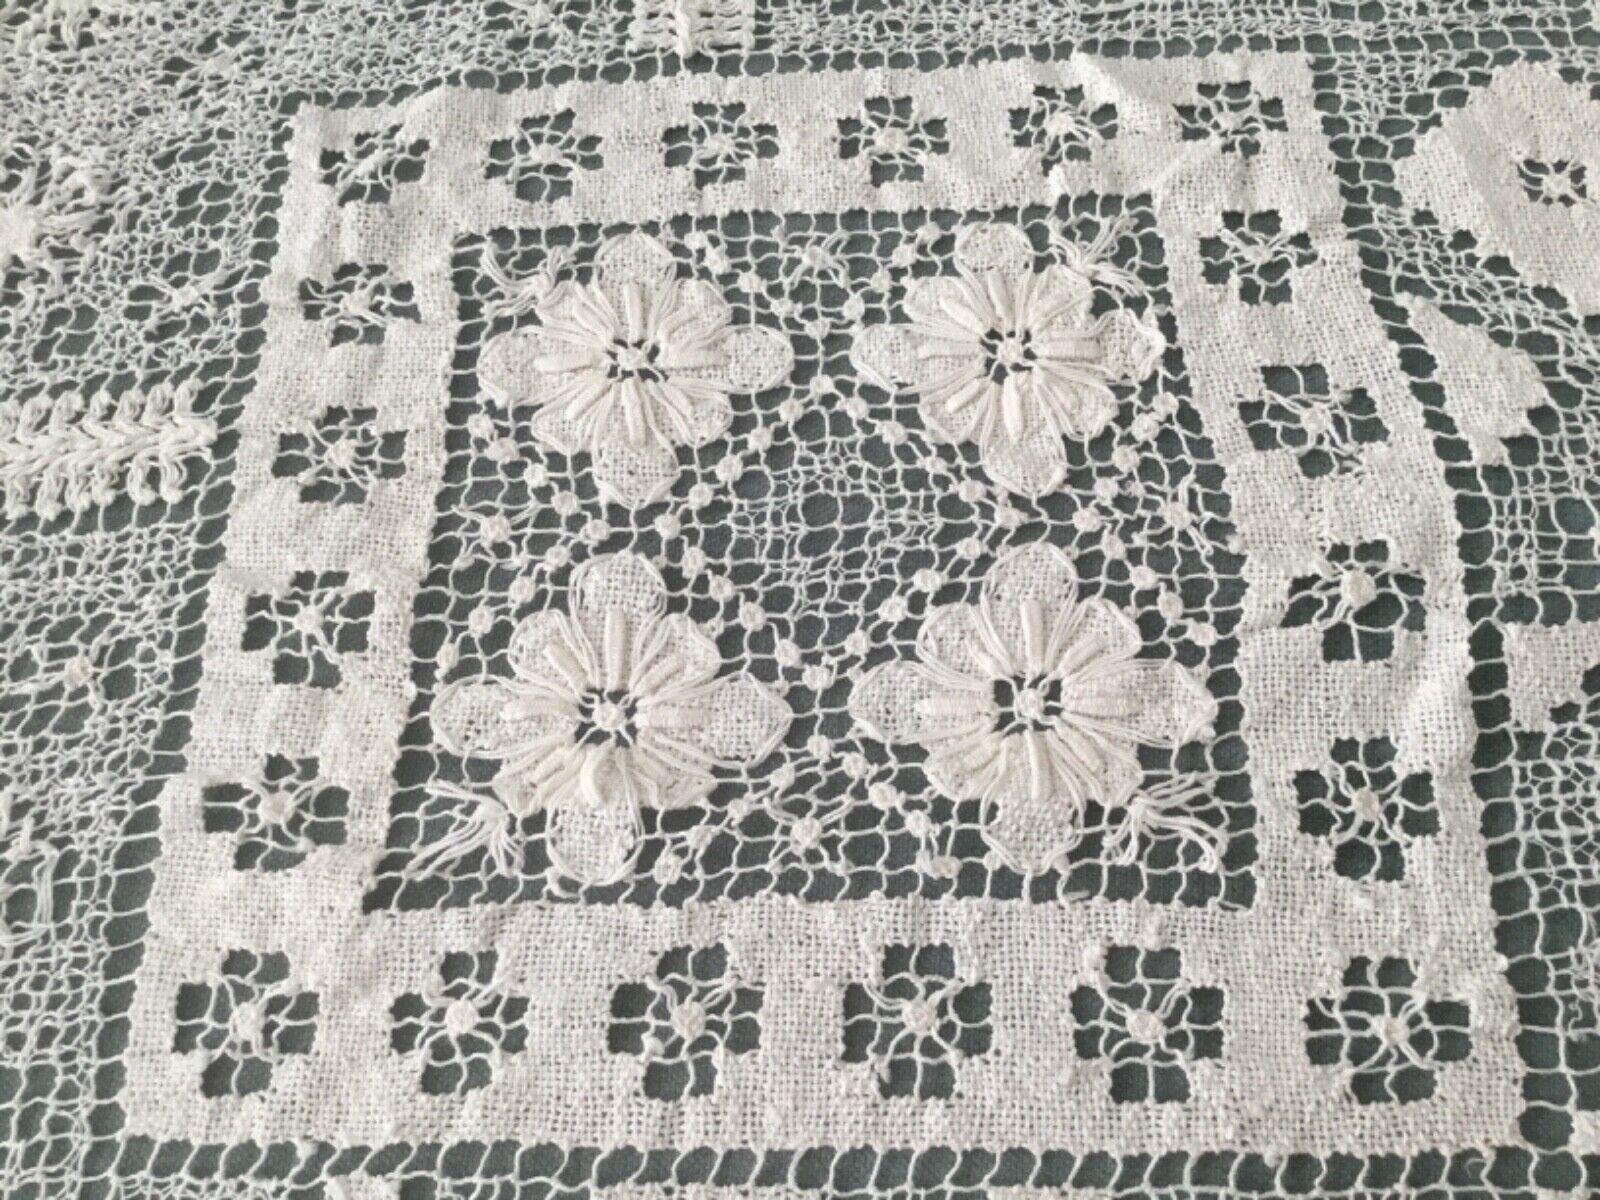 Vintage Tablecloth Hand Crochet Lace  Cotton 62” x 82”